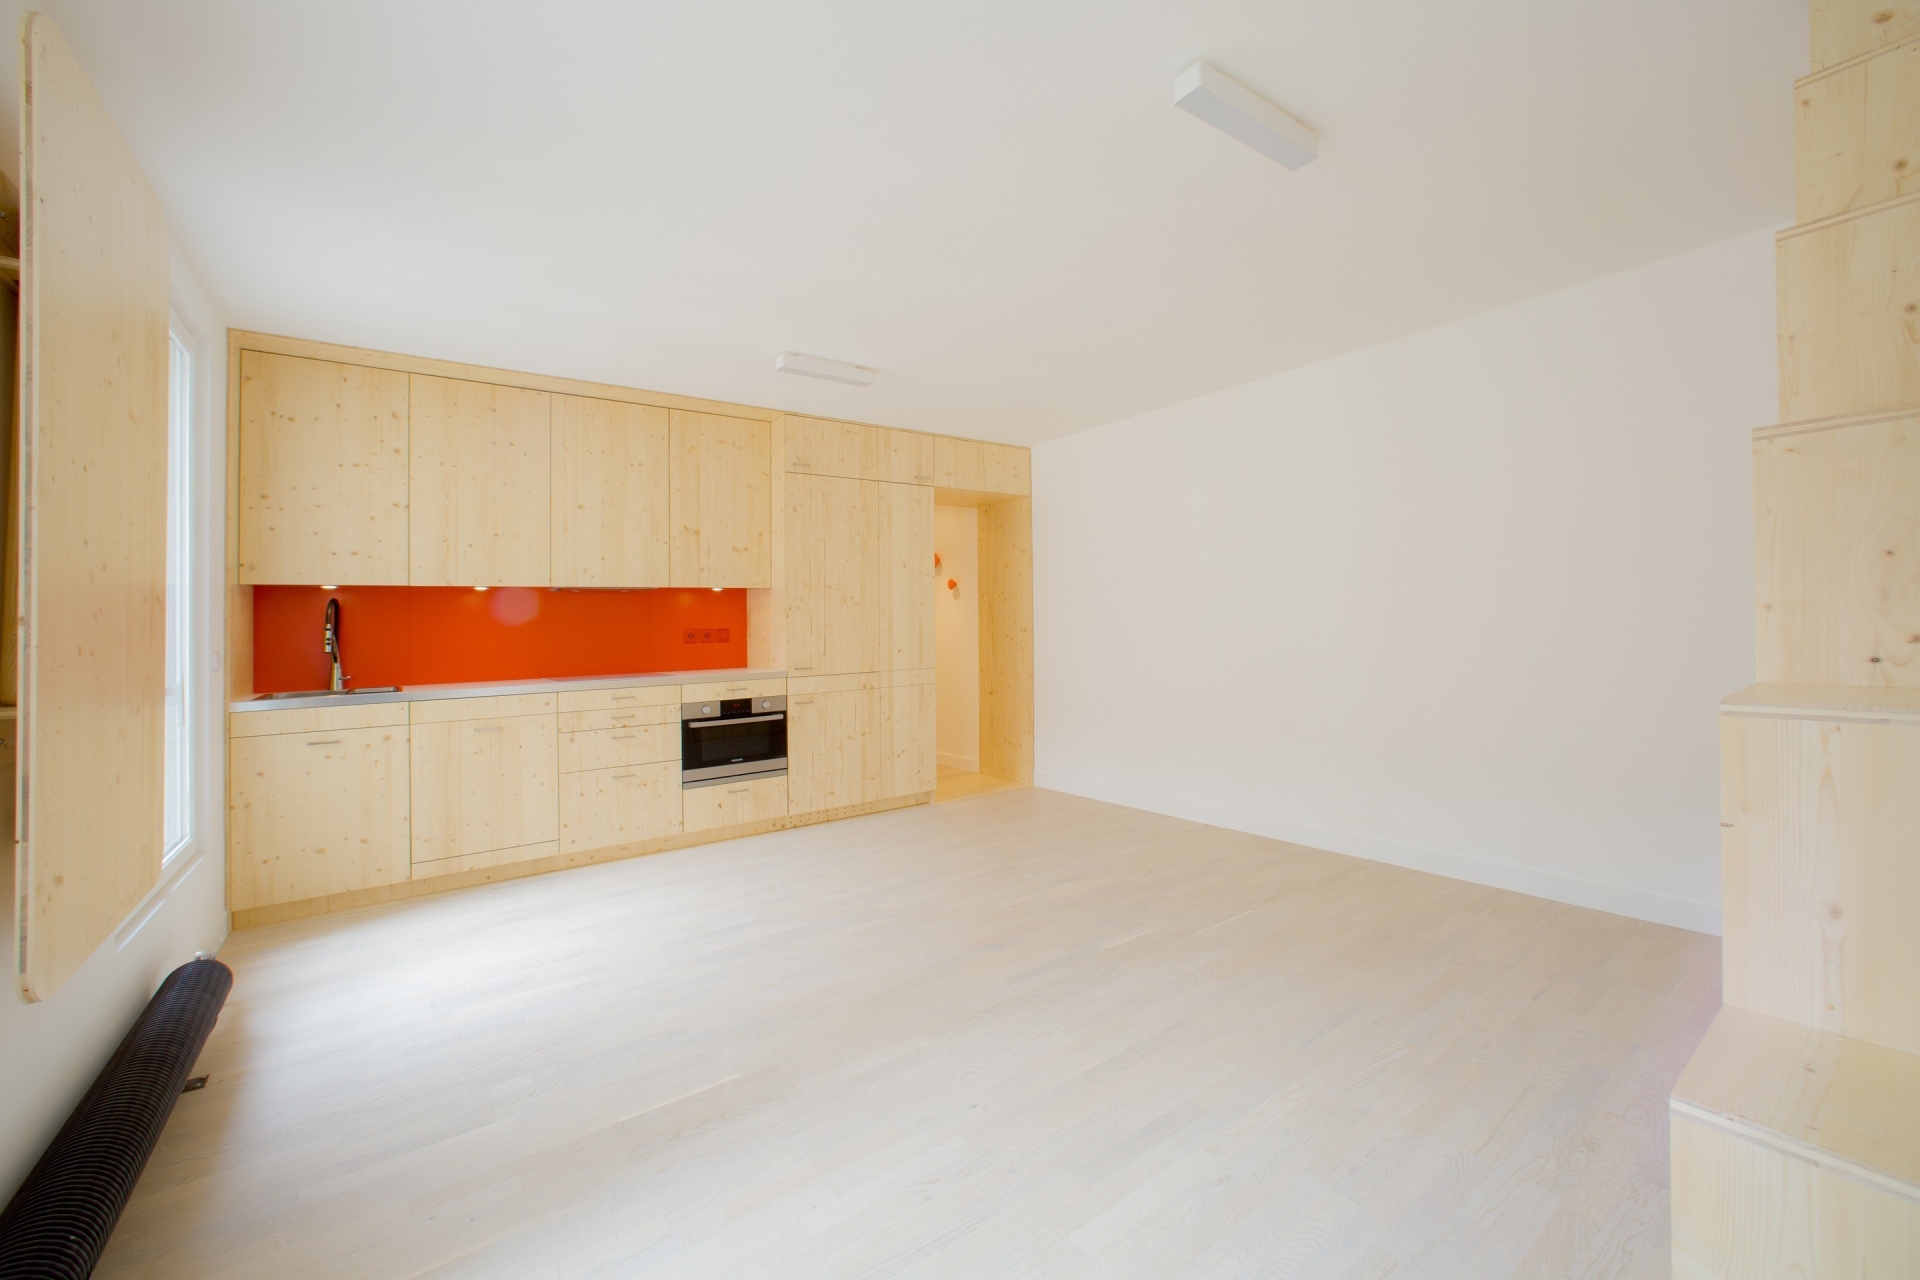 Phòng bếp được thiết kế kiểu chữ I cực kỳ phù hợp với những căn hộ có diện tích nhỏ. Backsplash sử dụng gam màu cam khiến khu vực nấu nướng sáng bừng hơn hẳn.